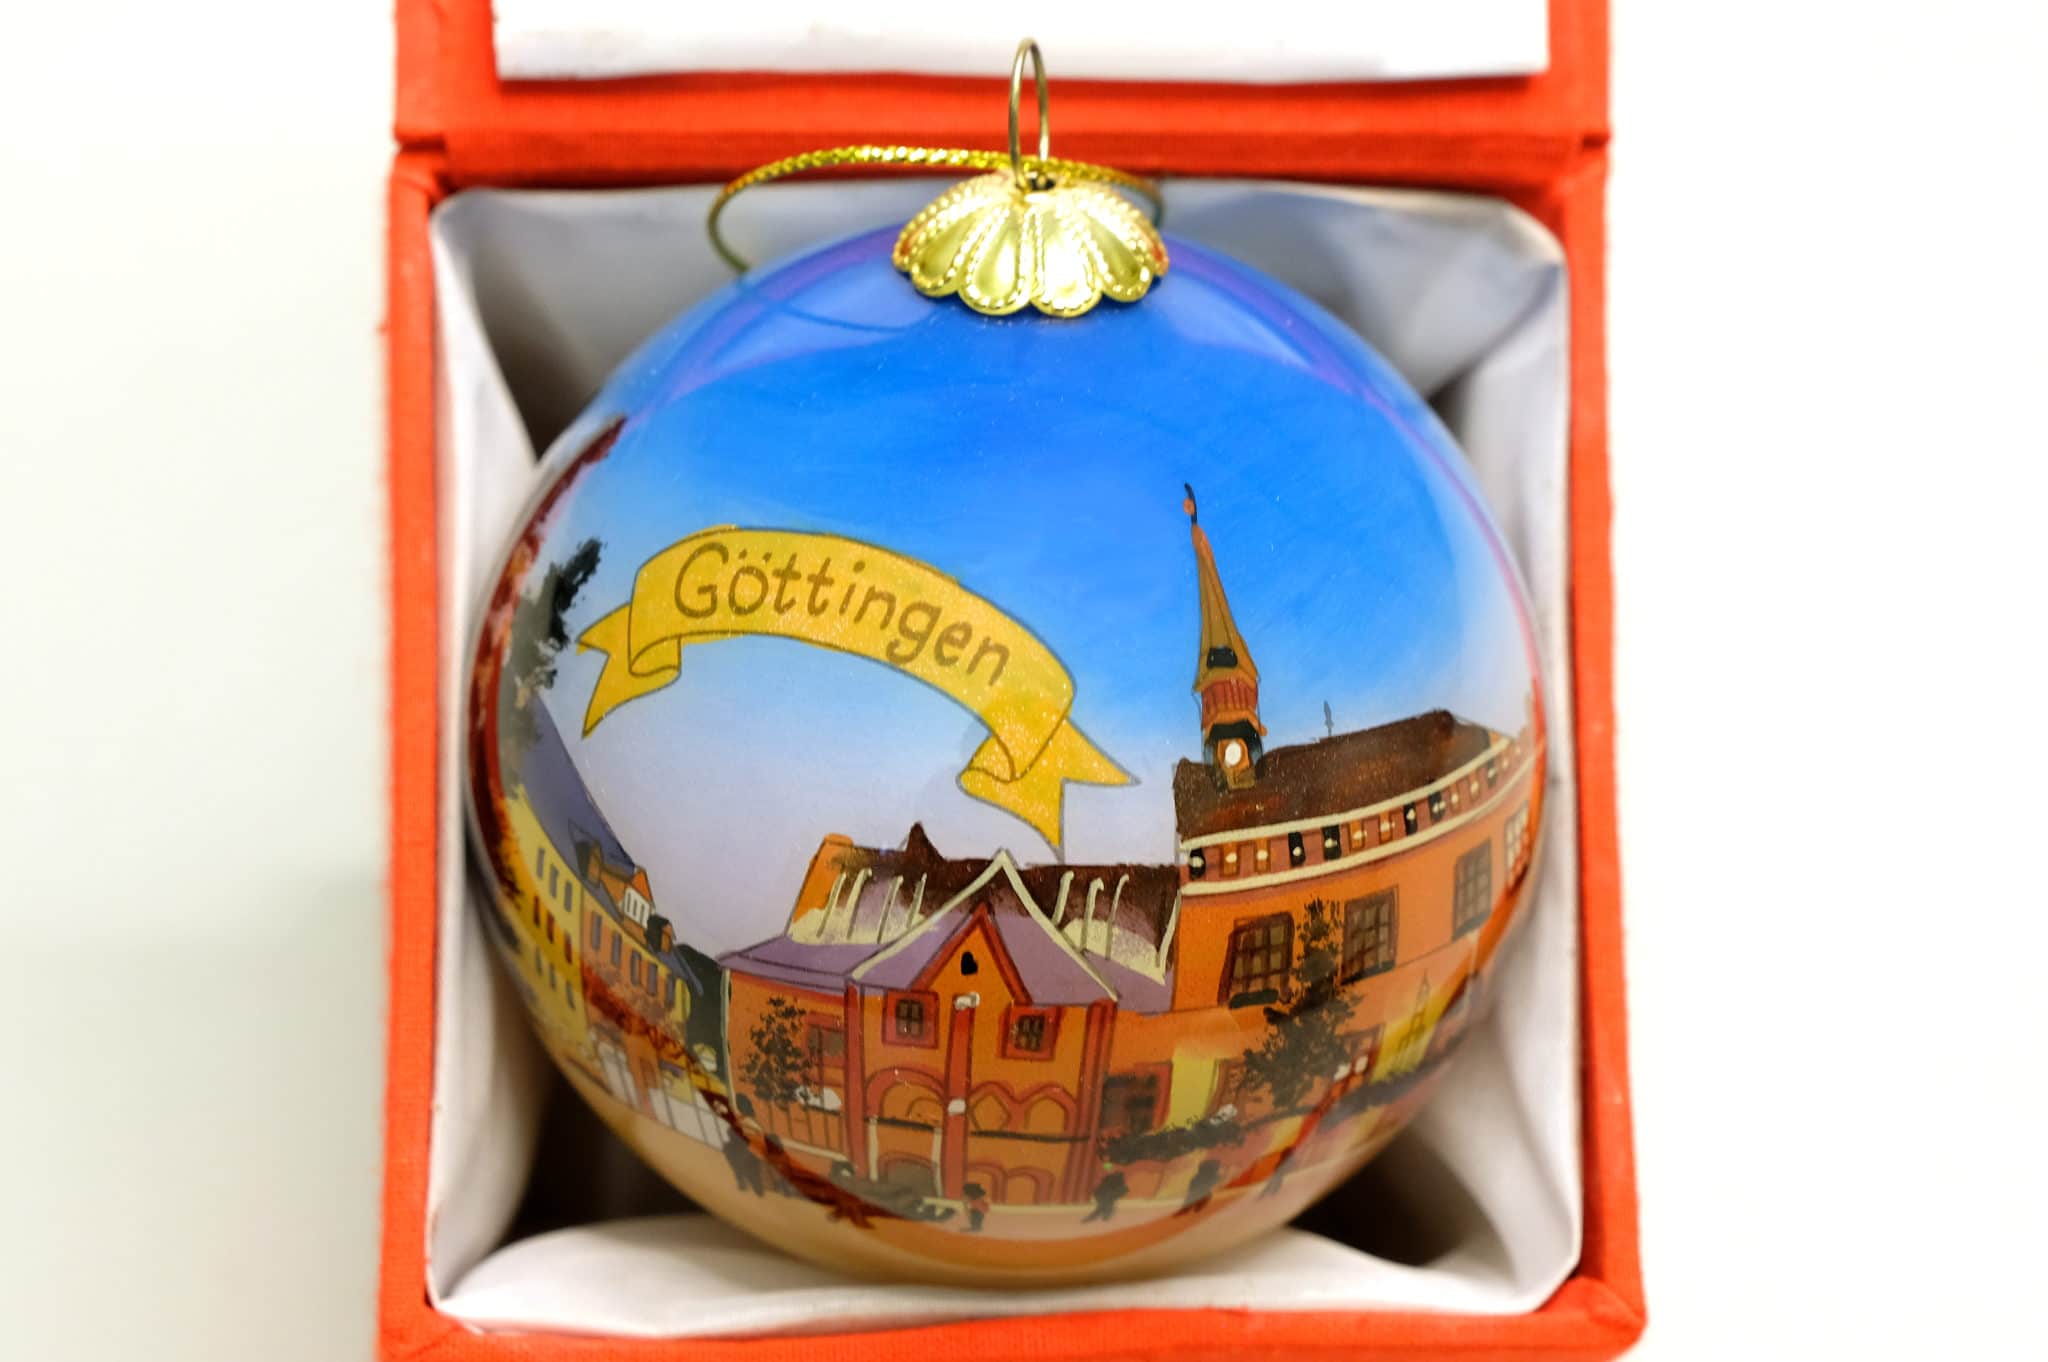 Für Göttingen-Fans: Eine Christbaumkugel für den heimischen Weihnachtsbaum oder, noch viel besser, zum Verschenken an die bekennenden Göttinger in aller Welt. Das weckt sicher schöne Erinnerungen.